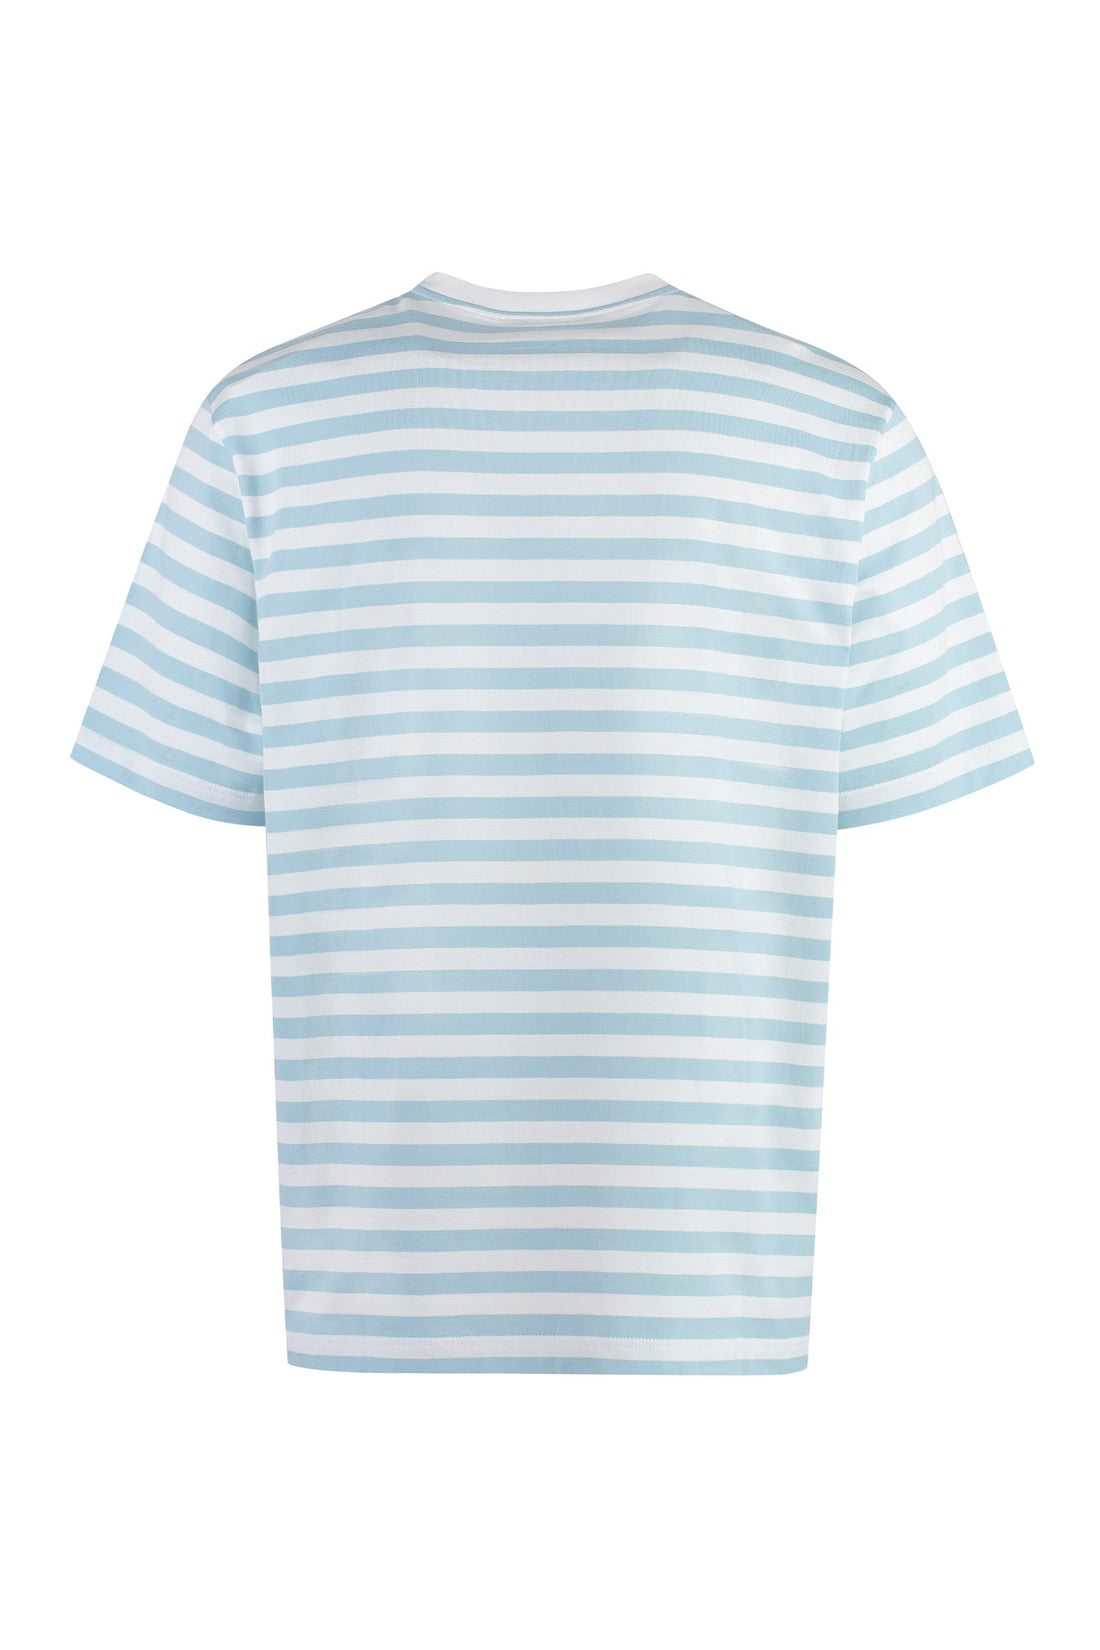 Versace-OUTLET-SALE-Striped cotton t-shirt-ARCHIVIST